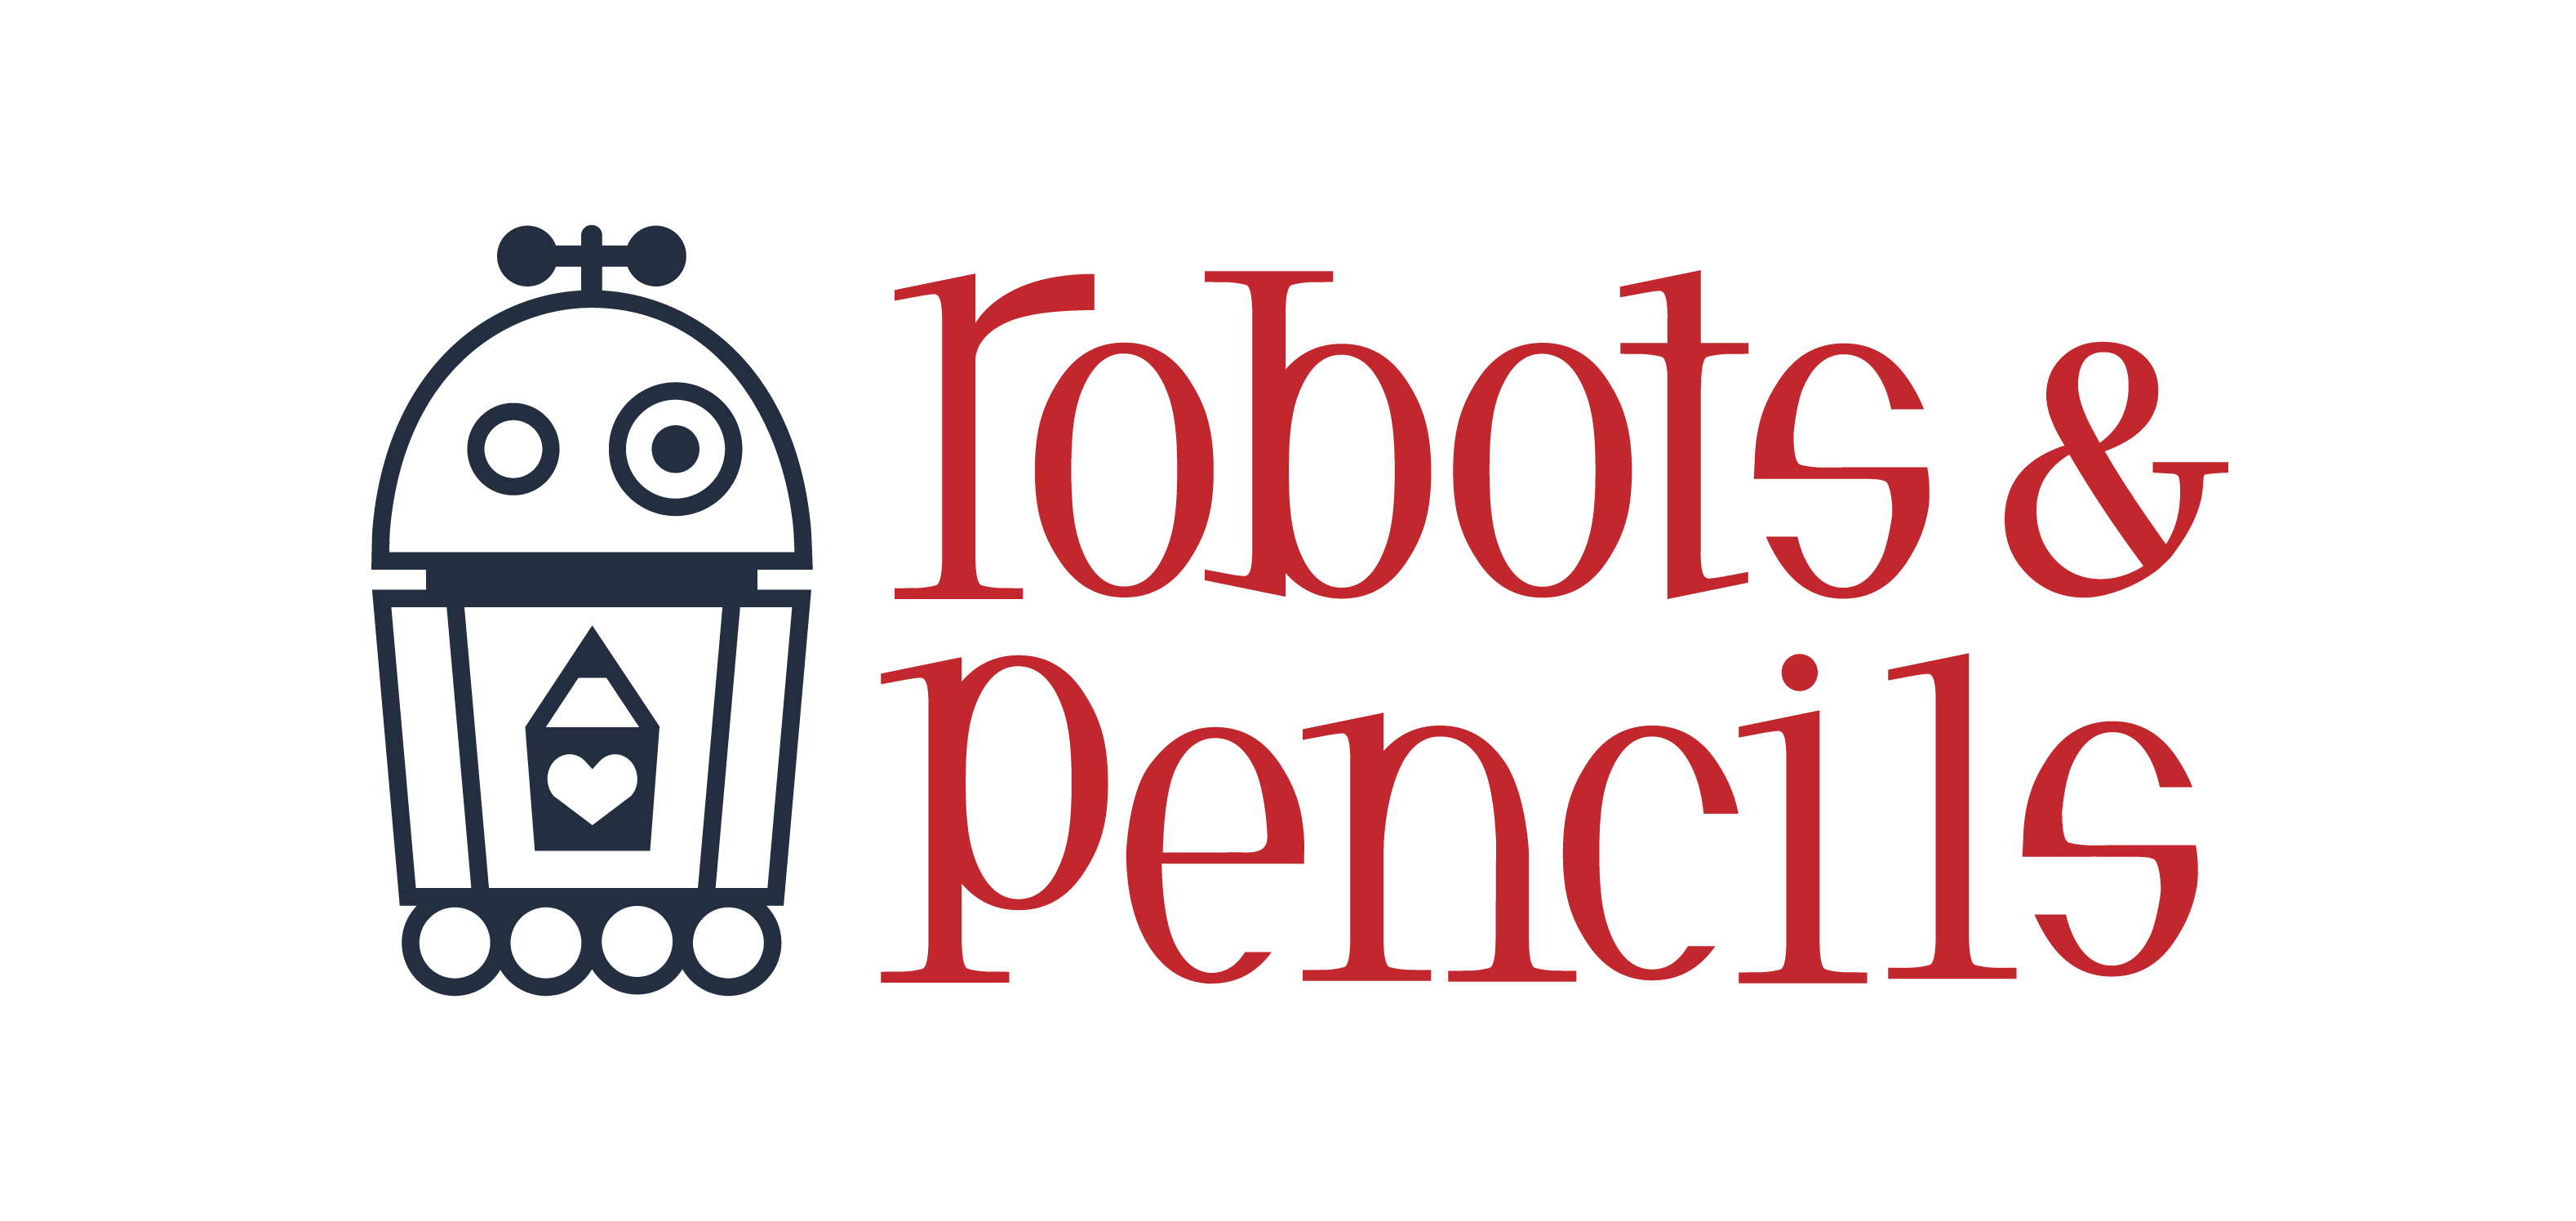 Robots and Pencils